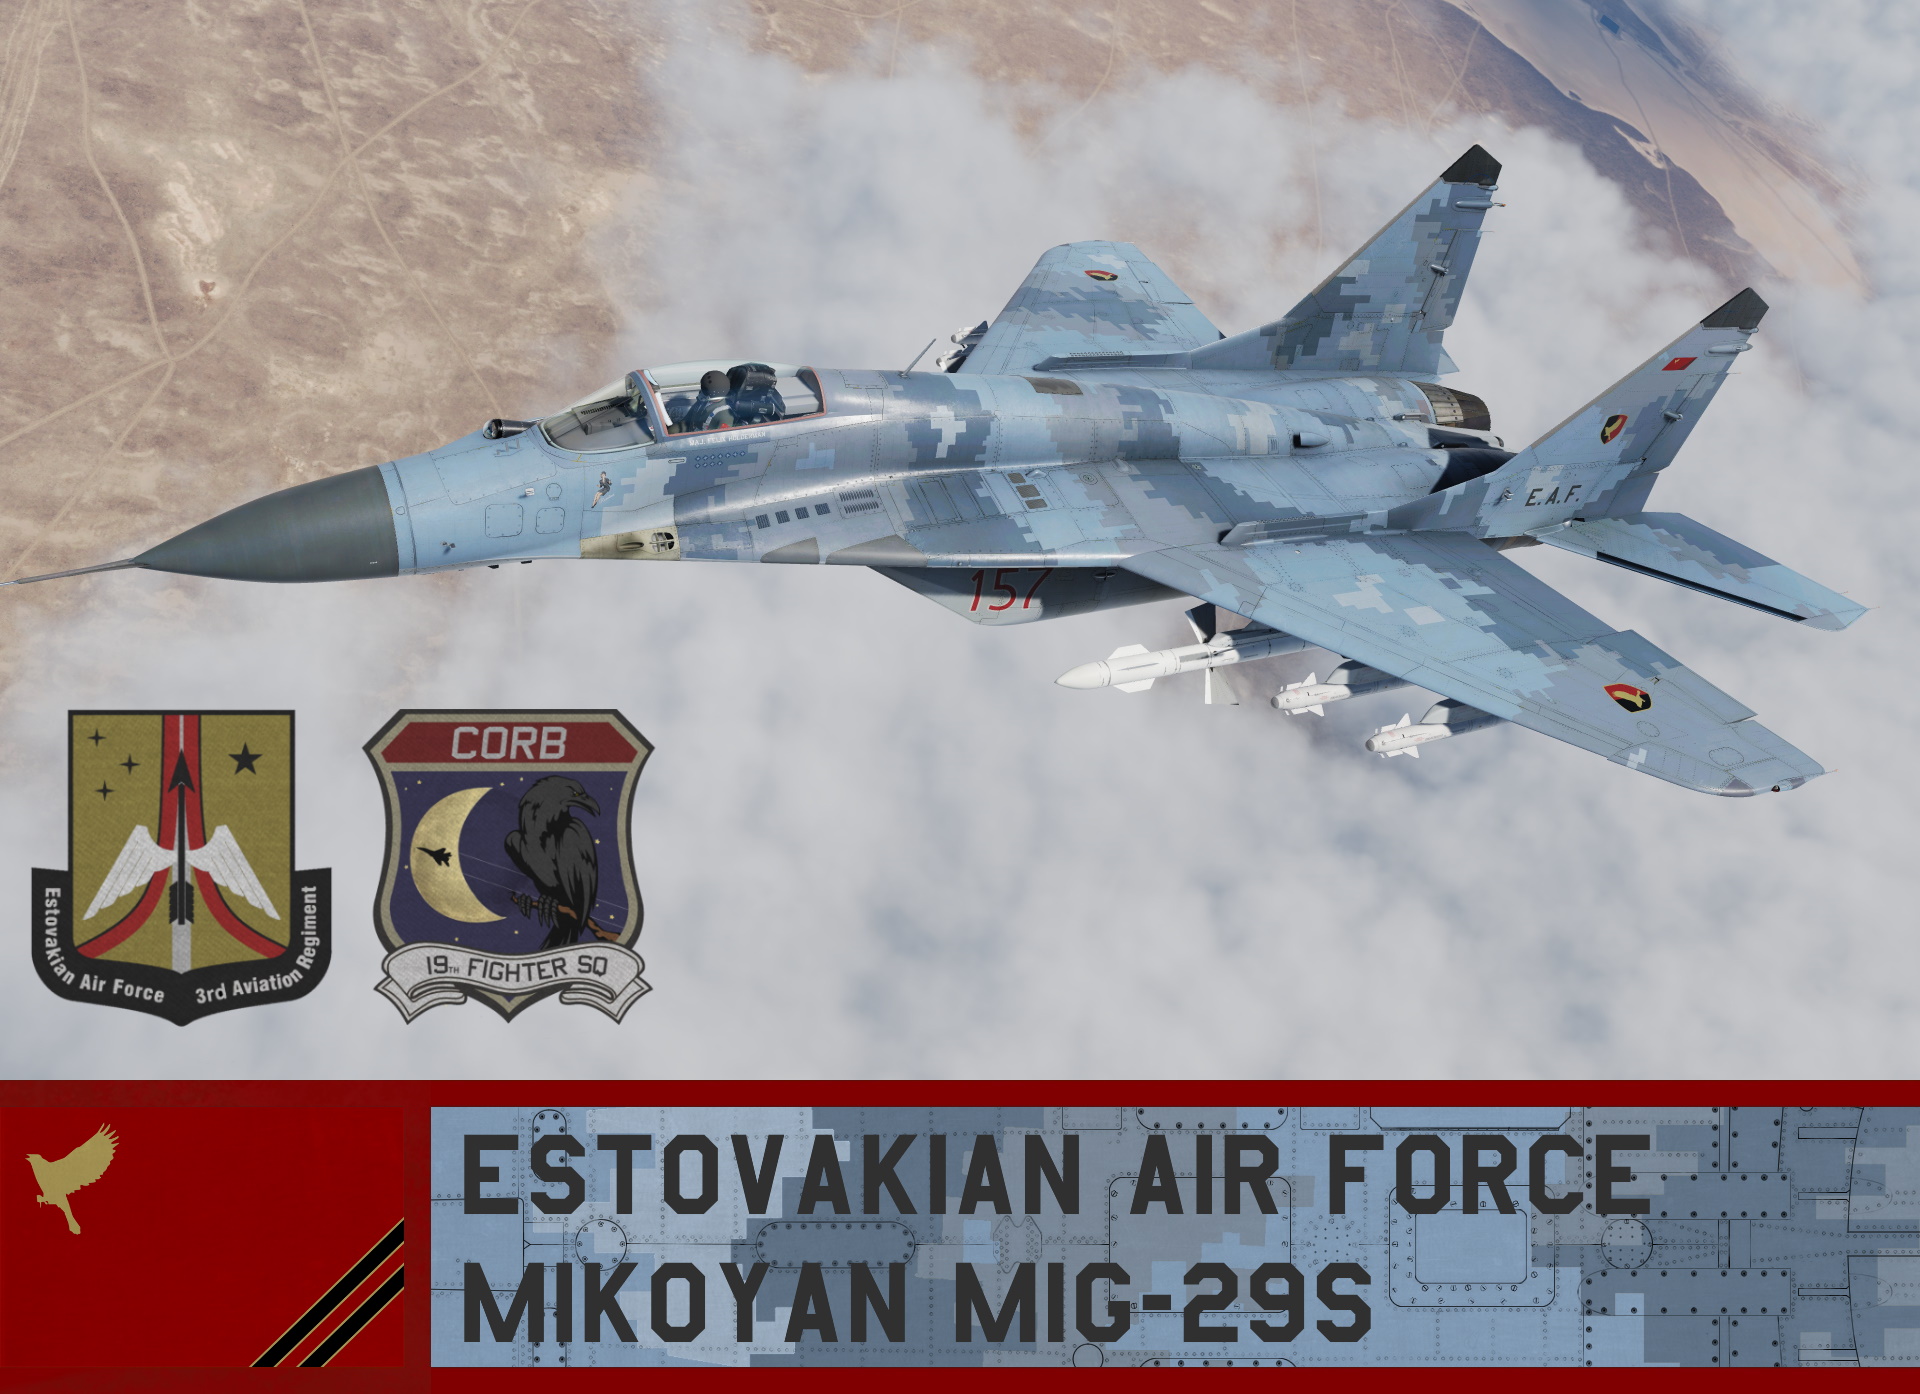 Estovakian Air Force Mig-29S - Ace Combat 6 (19th FS)